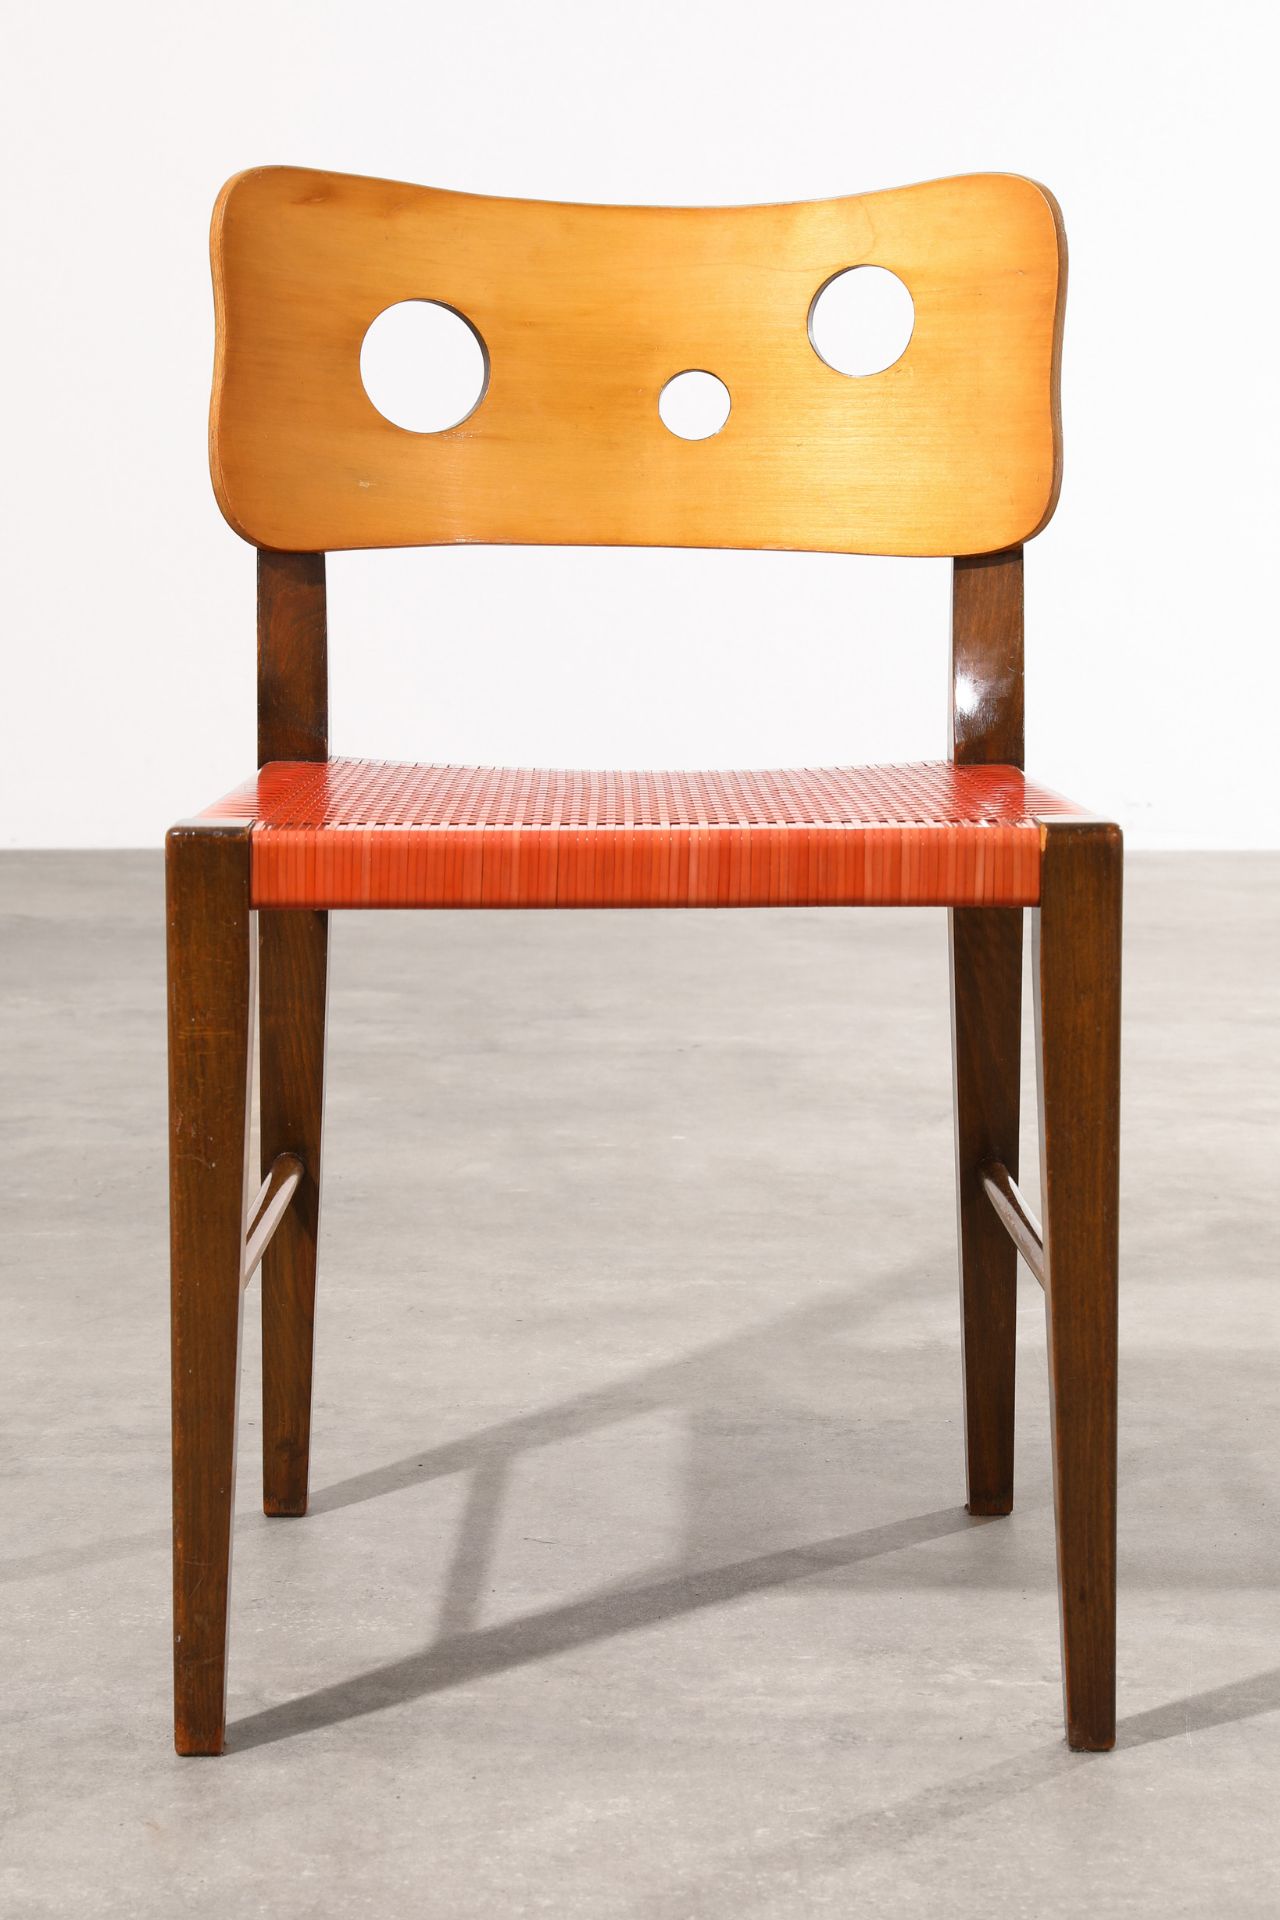 Bodo Rasch, Chair for the Café Insel in Stuttgart - Image 2 of 4